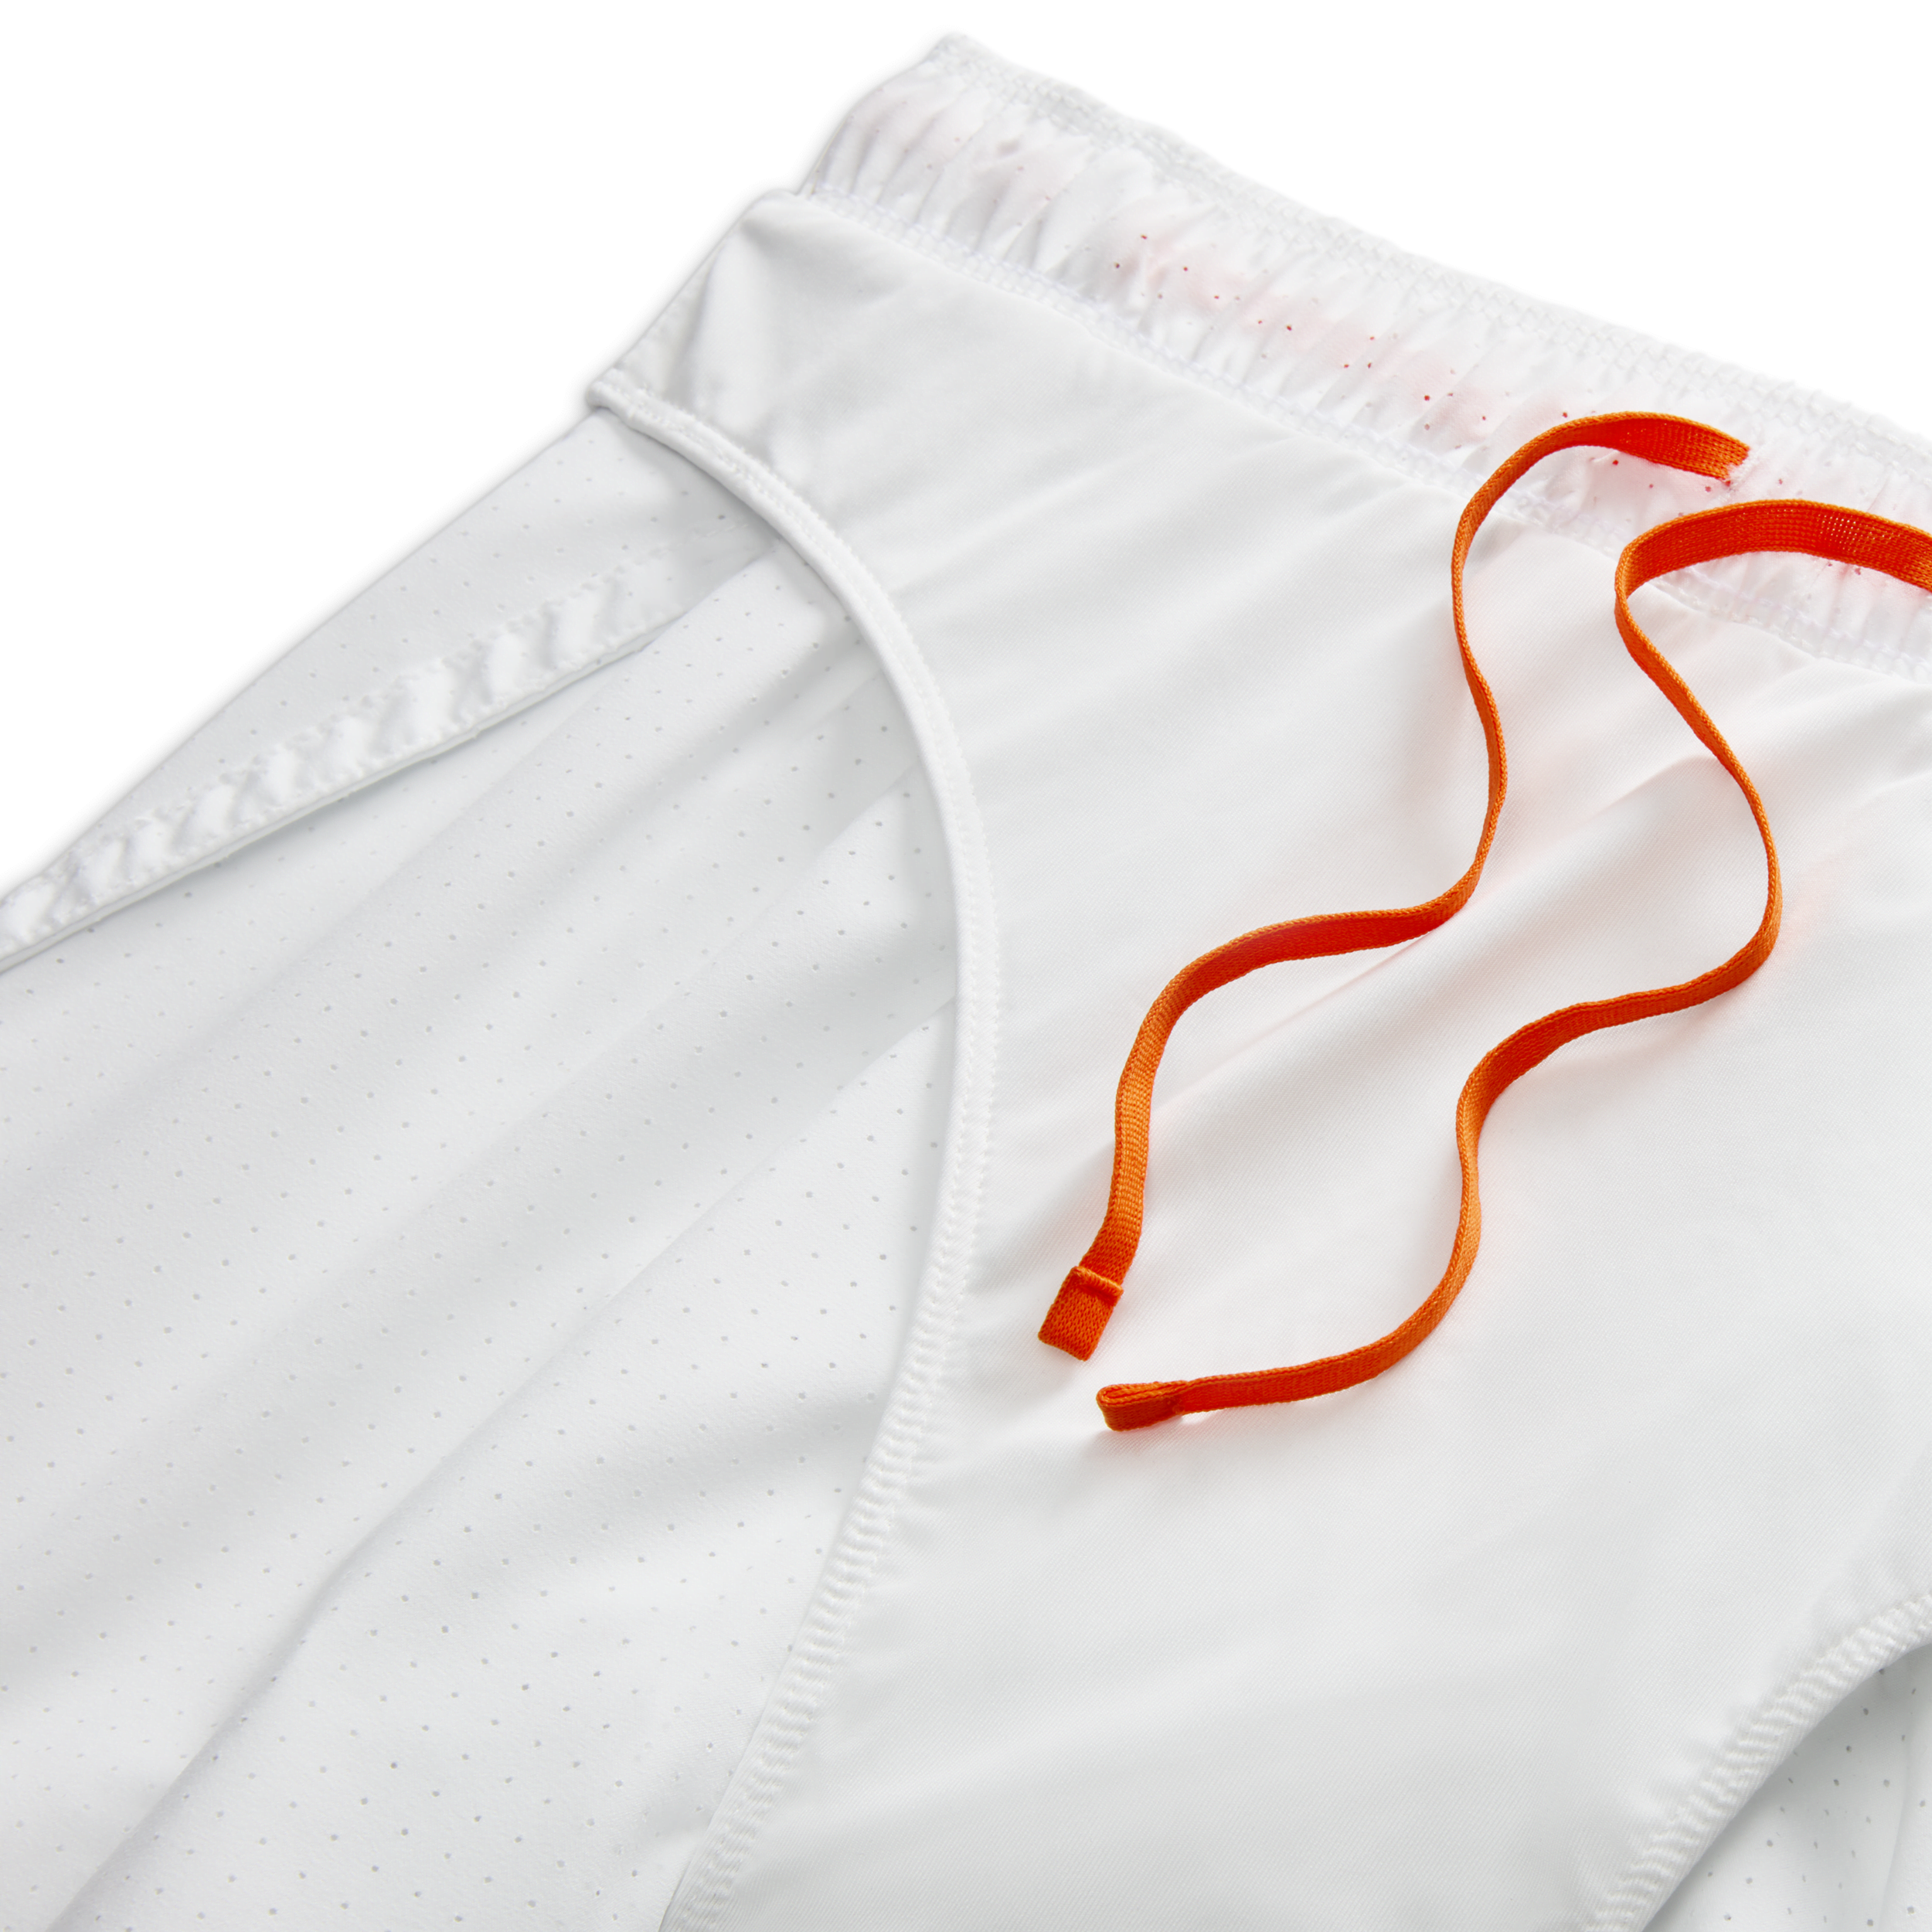 Nike Fast Dri-FIT hardloopshorts met binnenbroek voor heren (8 cm) Wit